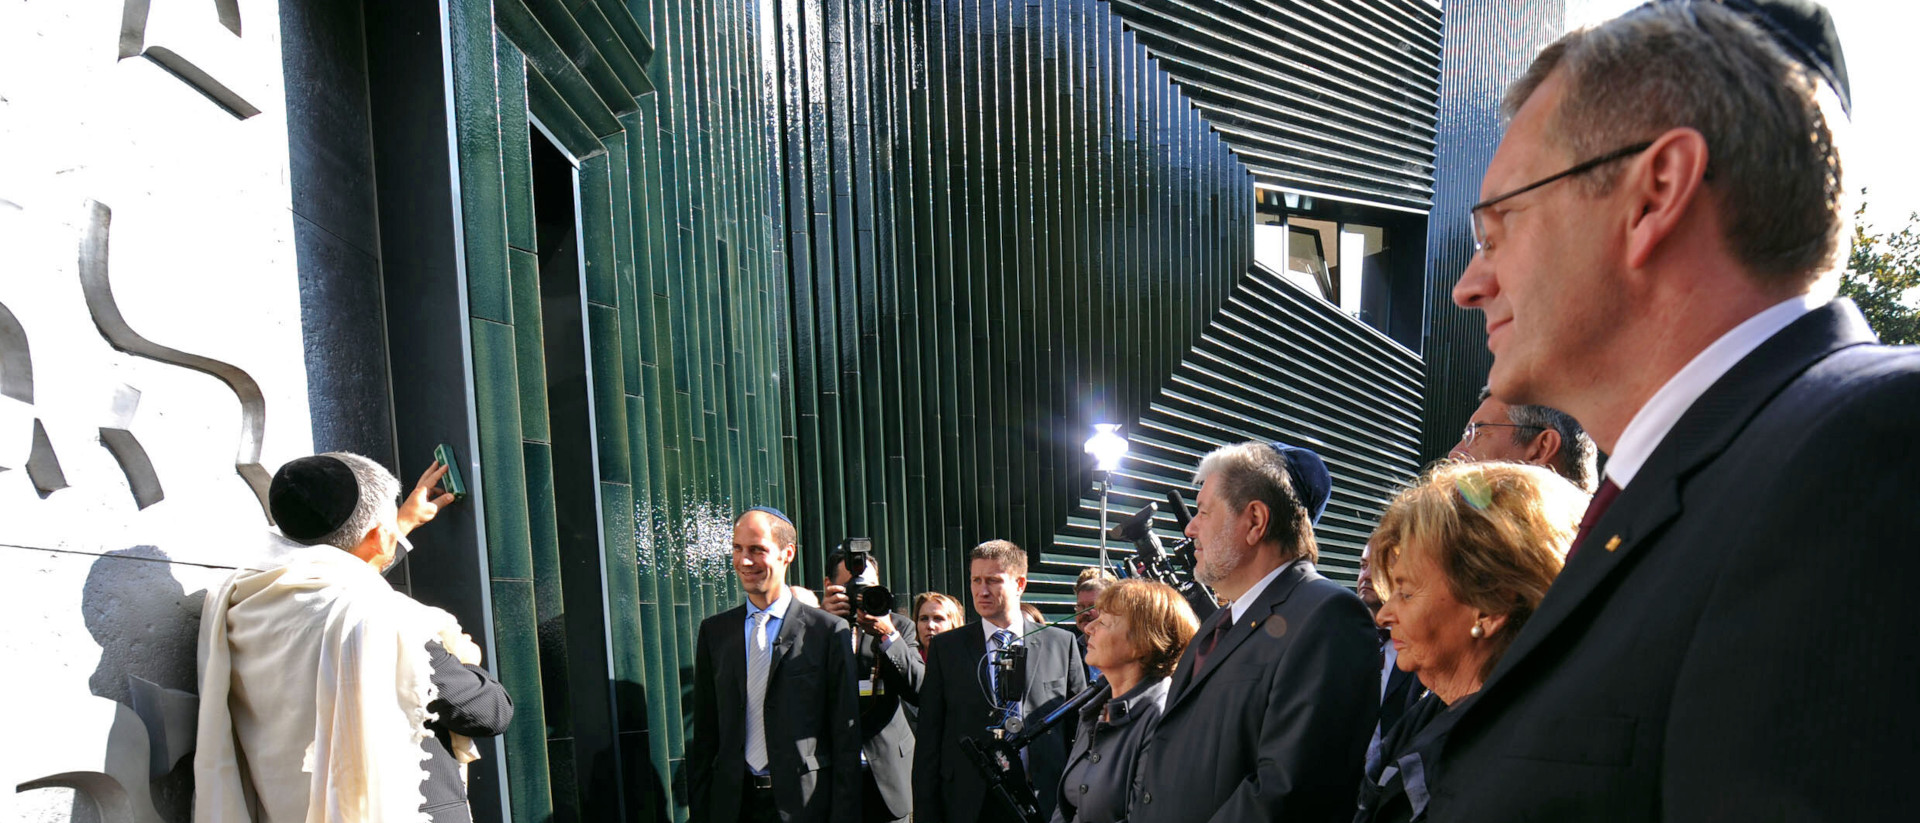 Eröffnungsfeier der Neuen Synagoge in Mainz 2010. Der zweite von links ist der Basler Architekt Manuel Herz.